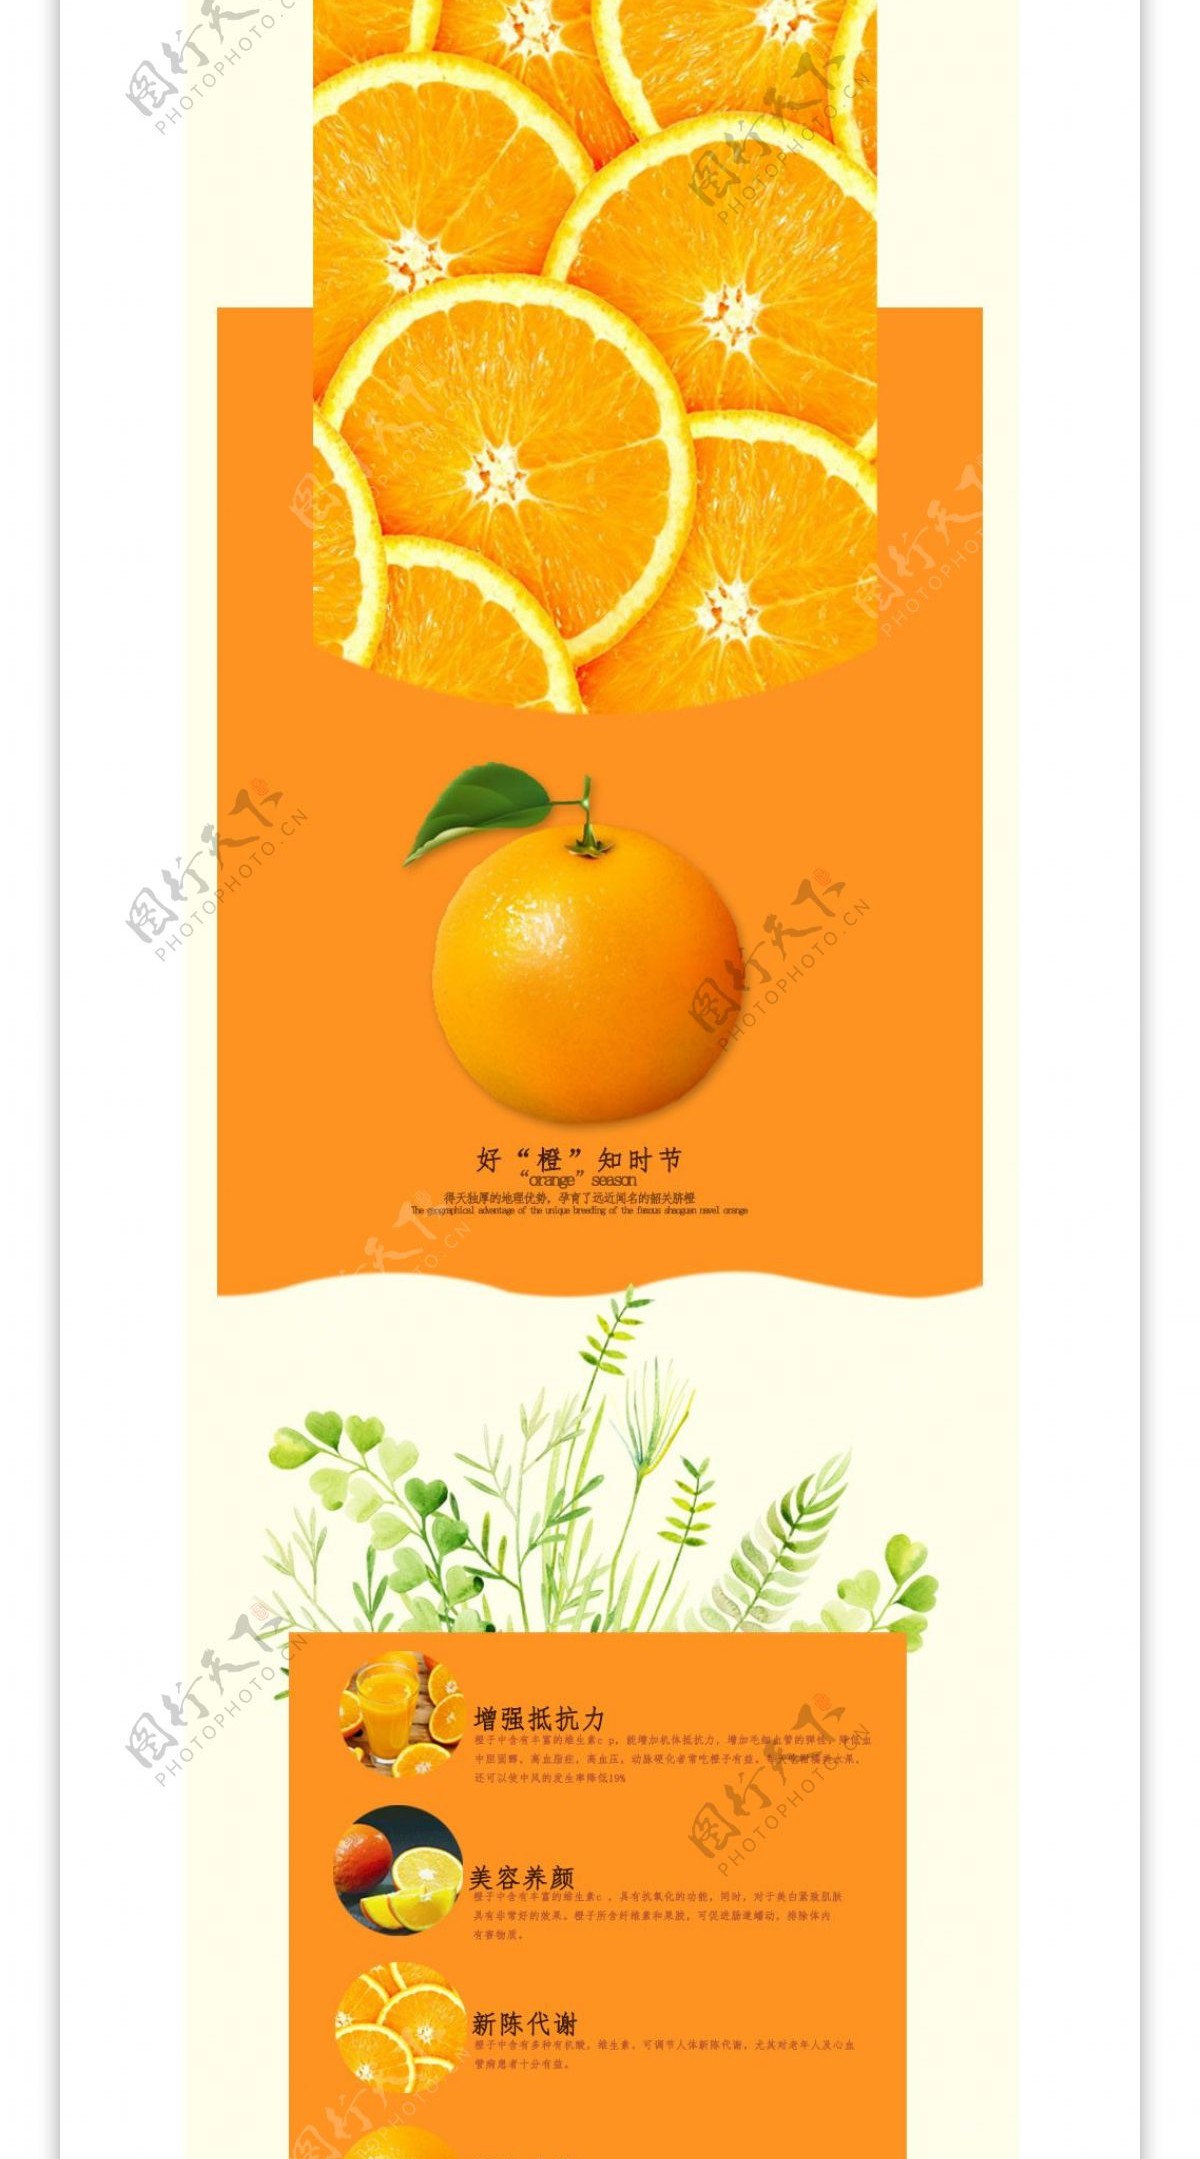 电商淘宝橙子详情页模版